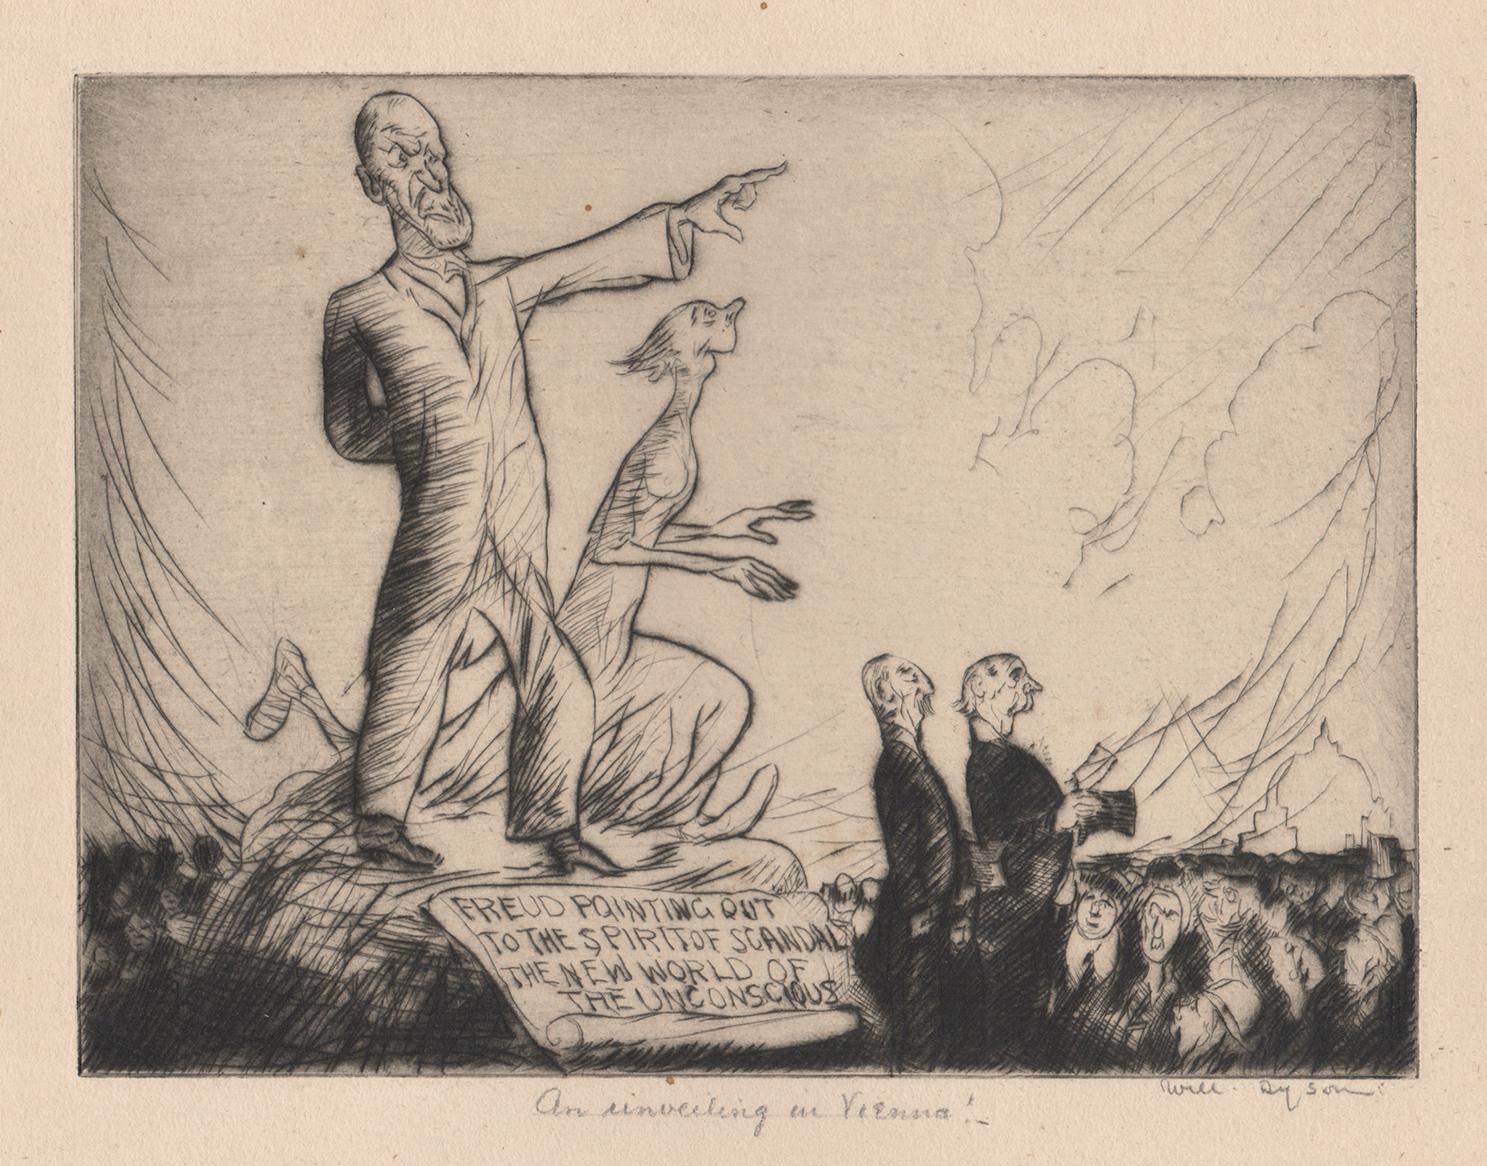 Vom Künstler unterhalb des Bildes signiert und betitelt. Satirische Szene mit Dr. Sigmund Freud, der den Weg zu einer Geisterfigur weist, die den "Skandal" darstellt. 

Will Dyson war ein einflussreicher australischer Satiriker. 

145 mm x 190 mm